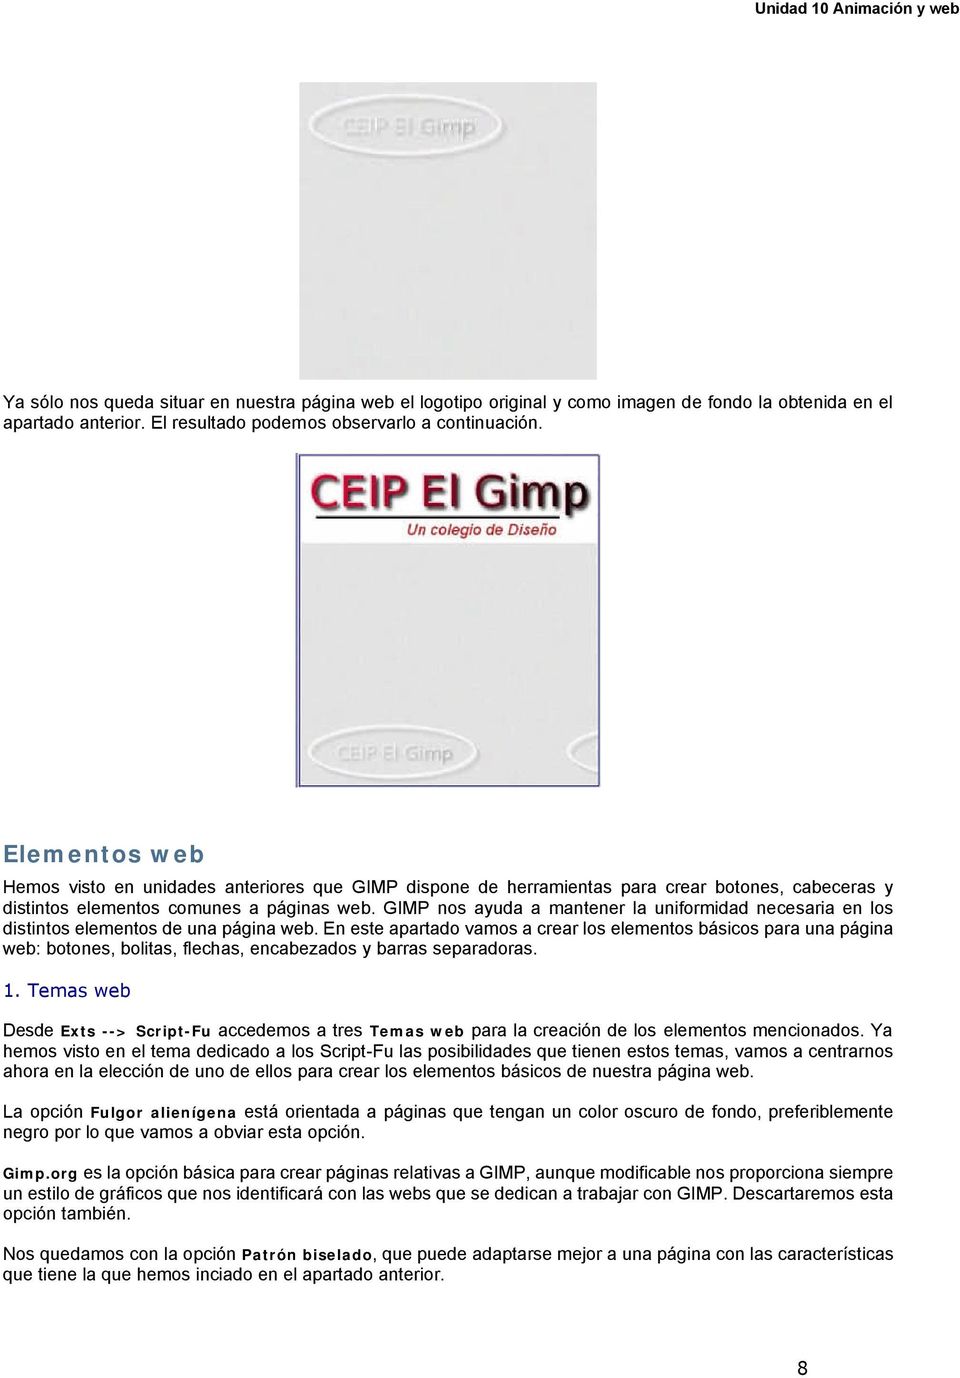 GIMP nos ayuda a mantener la uniformidad necesaria en los distintos elementos de una página web.